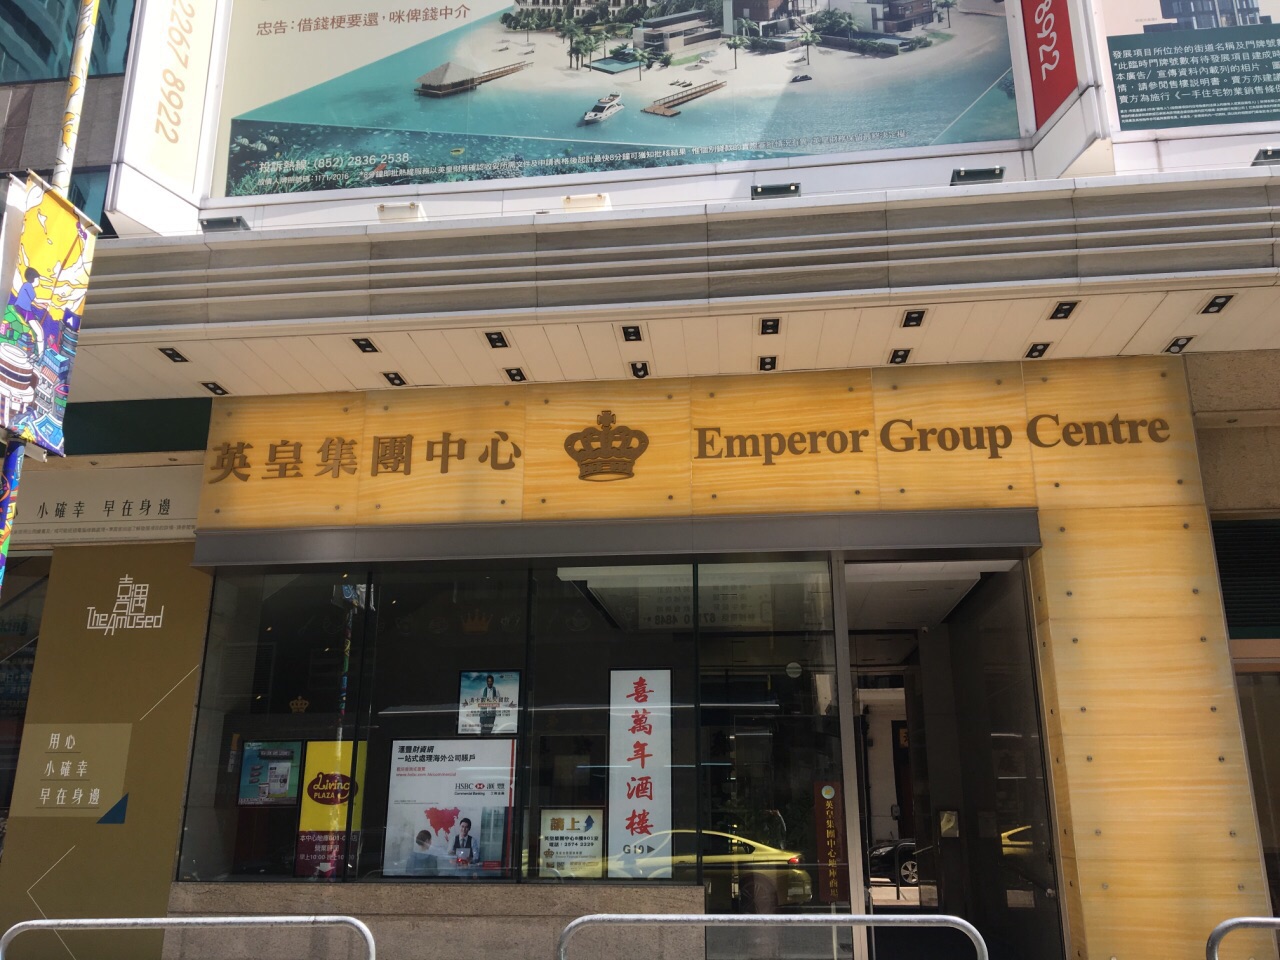 香港英皇集团中心商场购物攻略 英皇集团中心商场物中心 地址 电话 营业时间 携程攻略